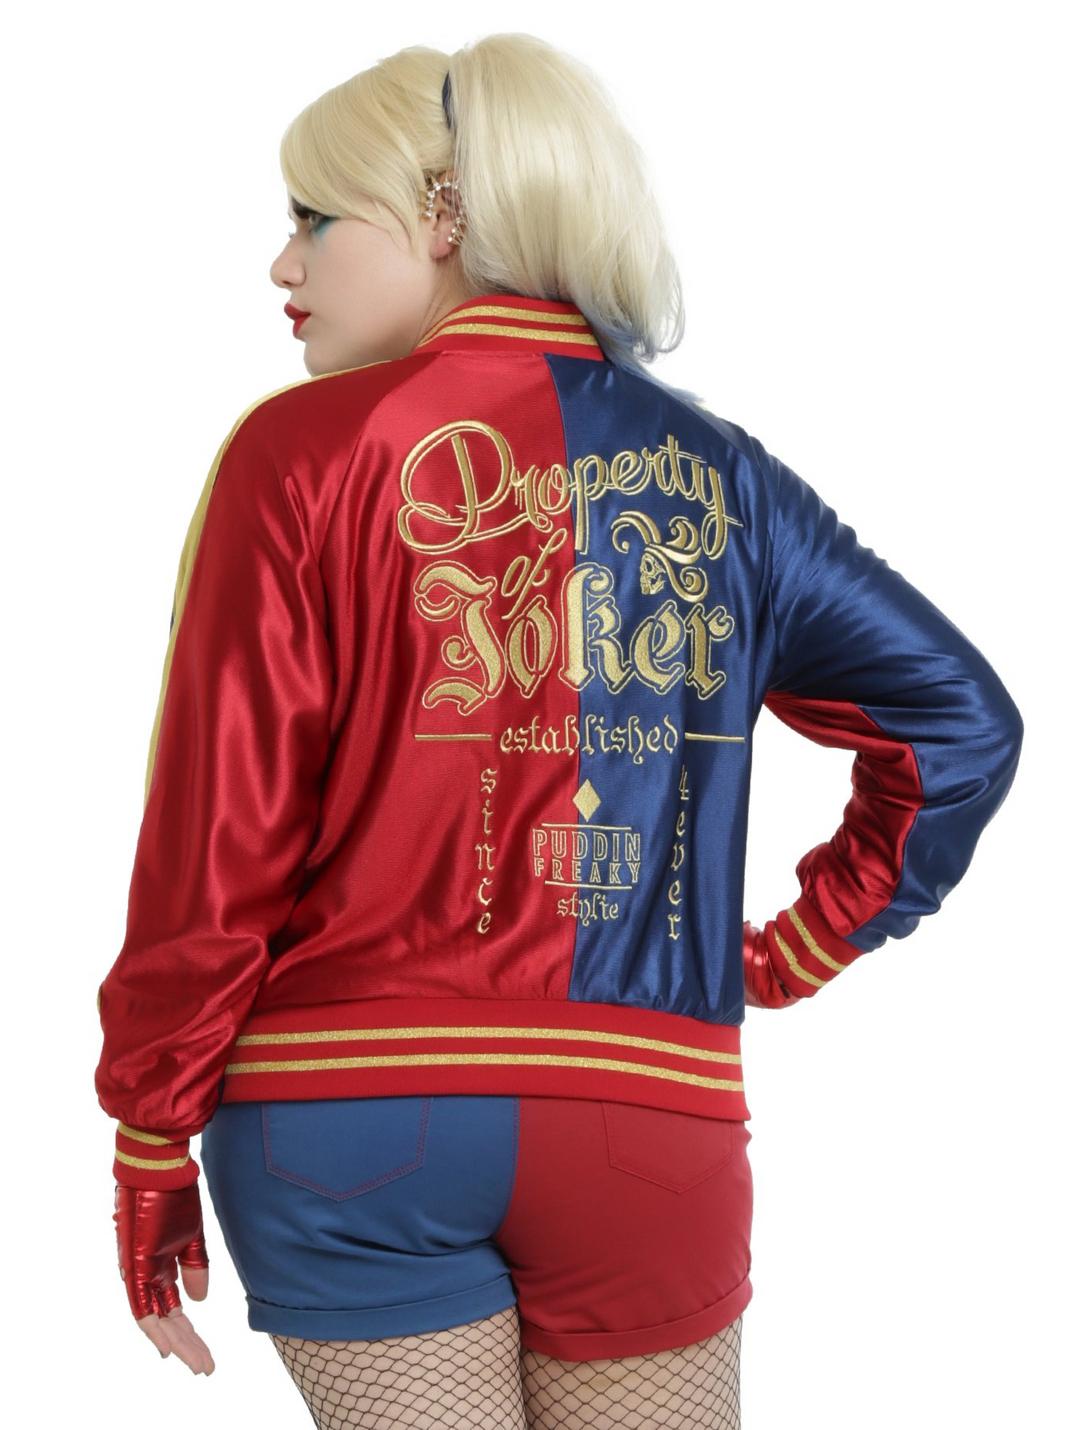 DC Comics Suicide Squad Harley Quinn Girls Satin Souvenir Jacket Plus Size, RED, hi-res